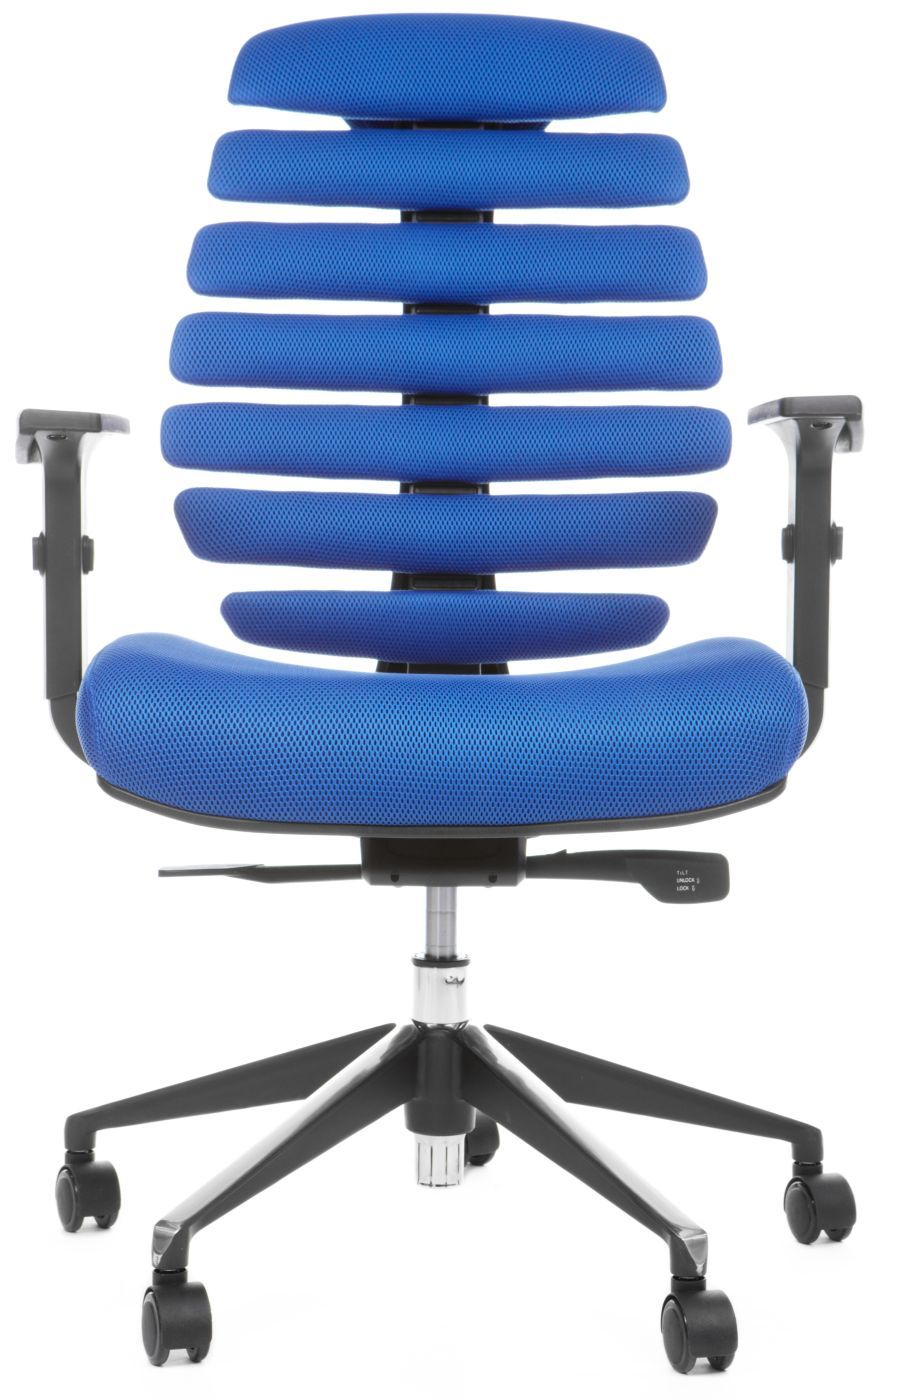 MERCURY kancelárska stolička FISH BONES čierny plast,modrá látka TW10